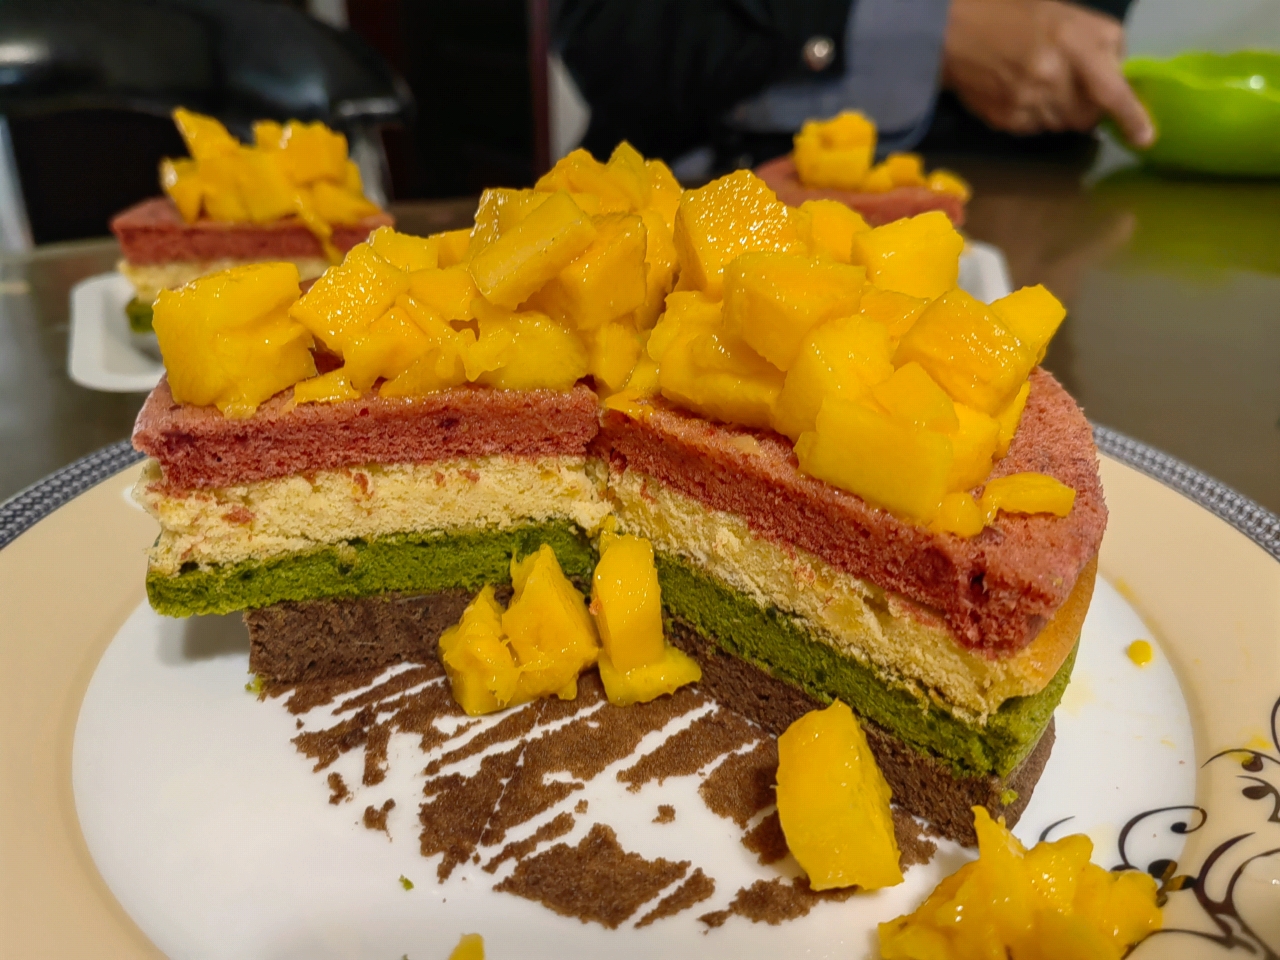 （6寸）彩虹🌈蛋糕胚（无色素）